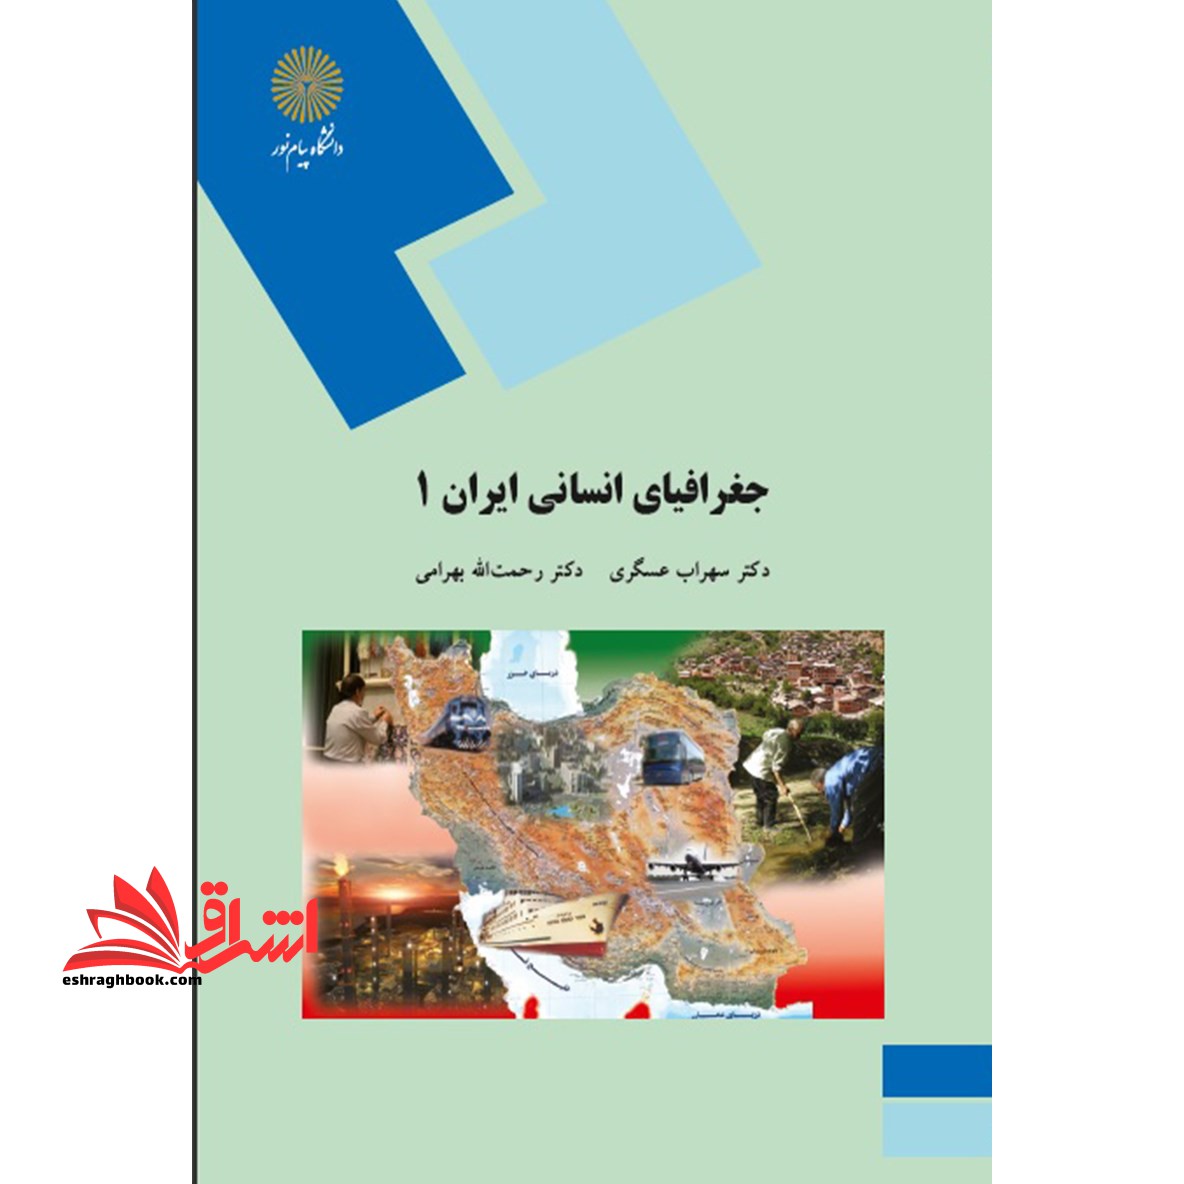 جغرافیای انسانی ایران (۱)  (جمعیت - اقتصاد)  (رشته جغرافیا)